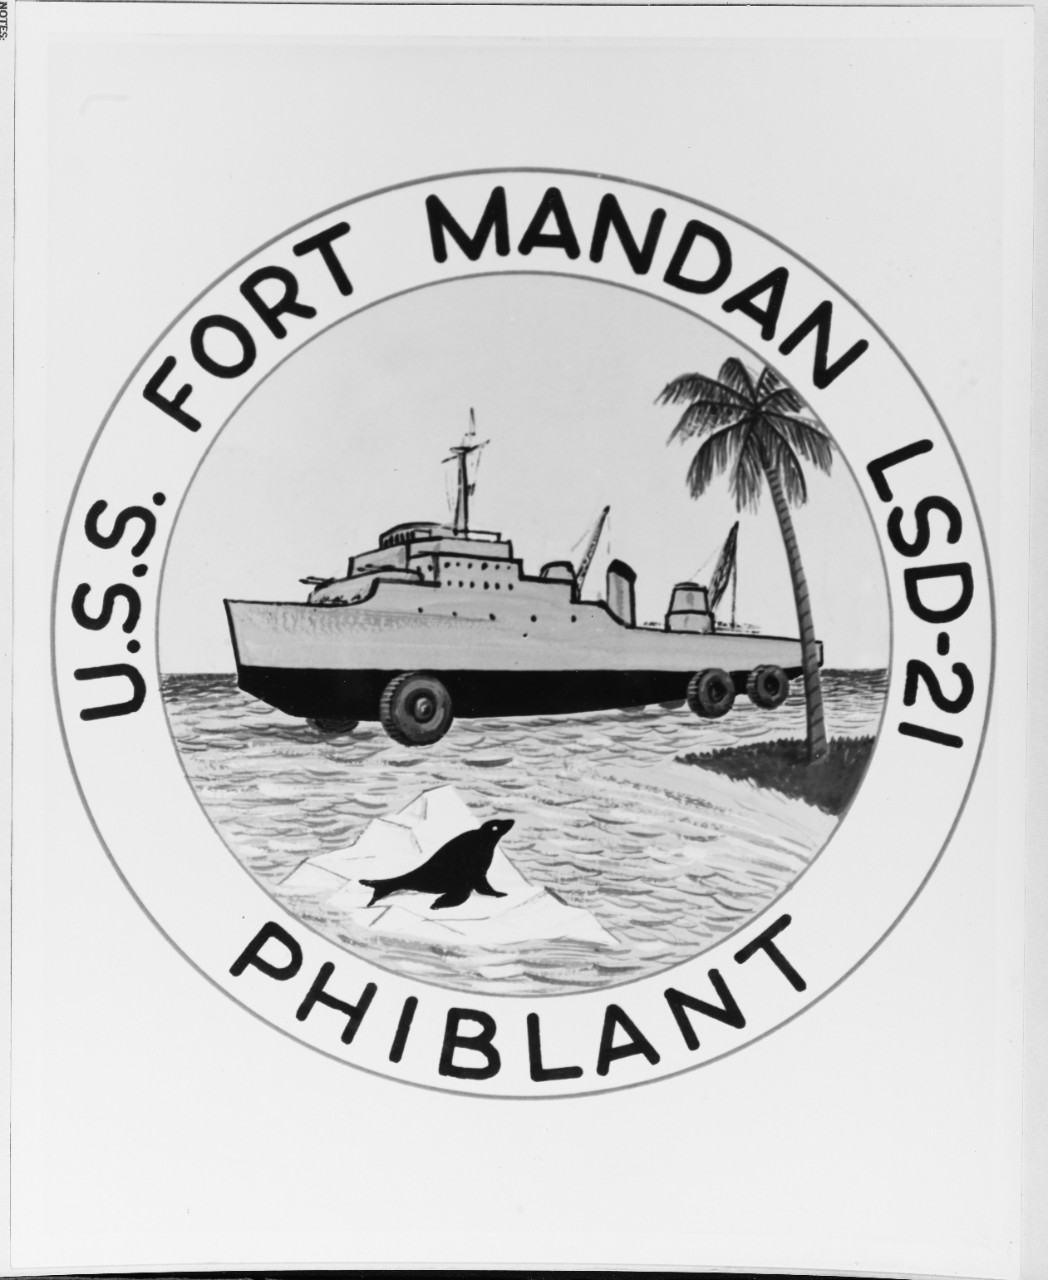 Insignia: USS FORT MANDAN (LSD-21)